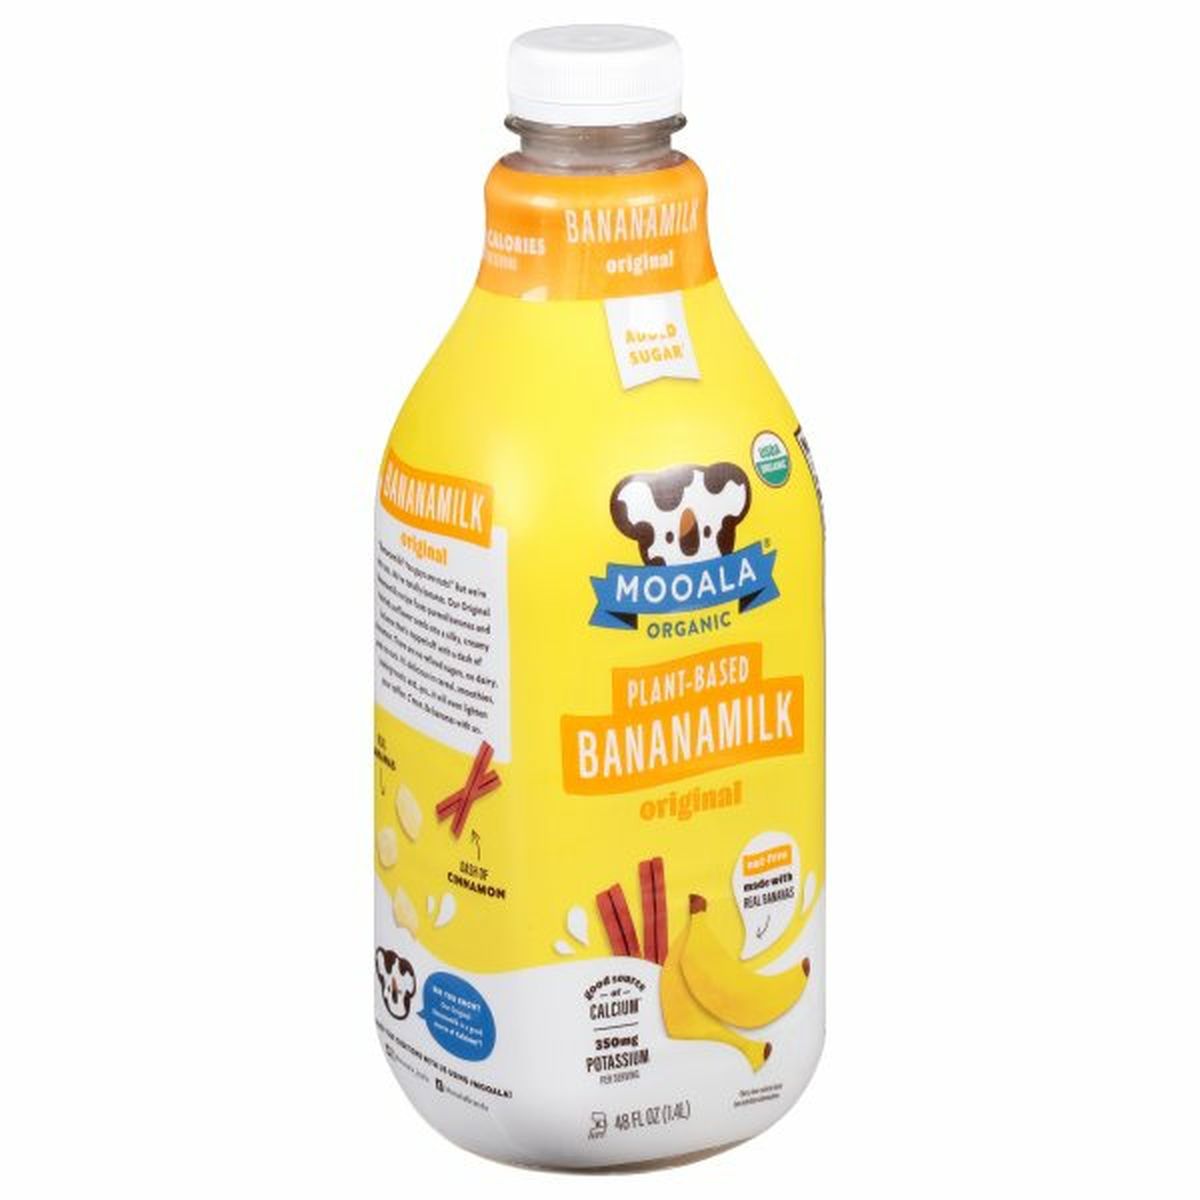 Calories in Mooala Banana Milk, Plant-Based, Original